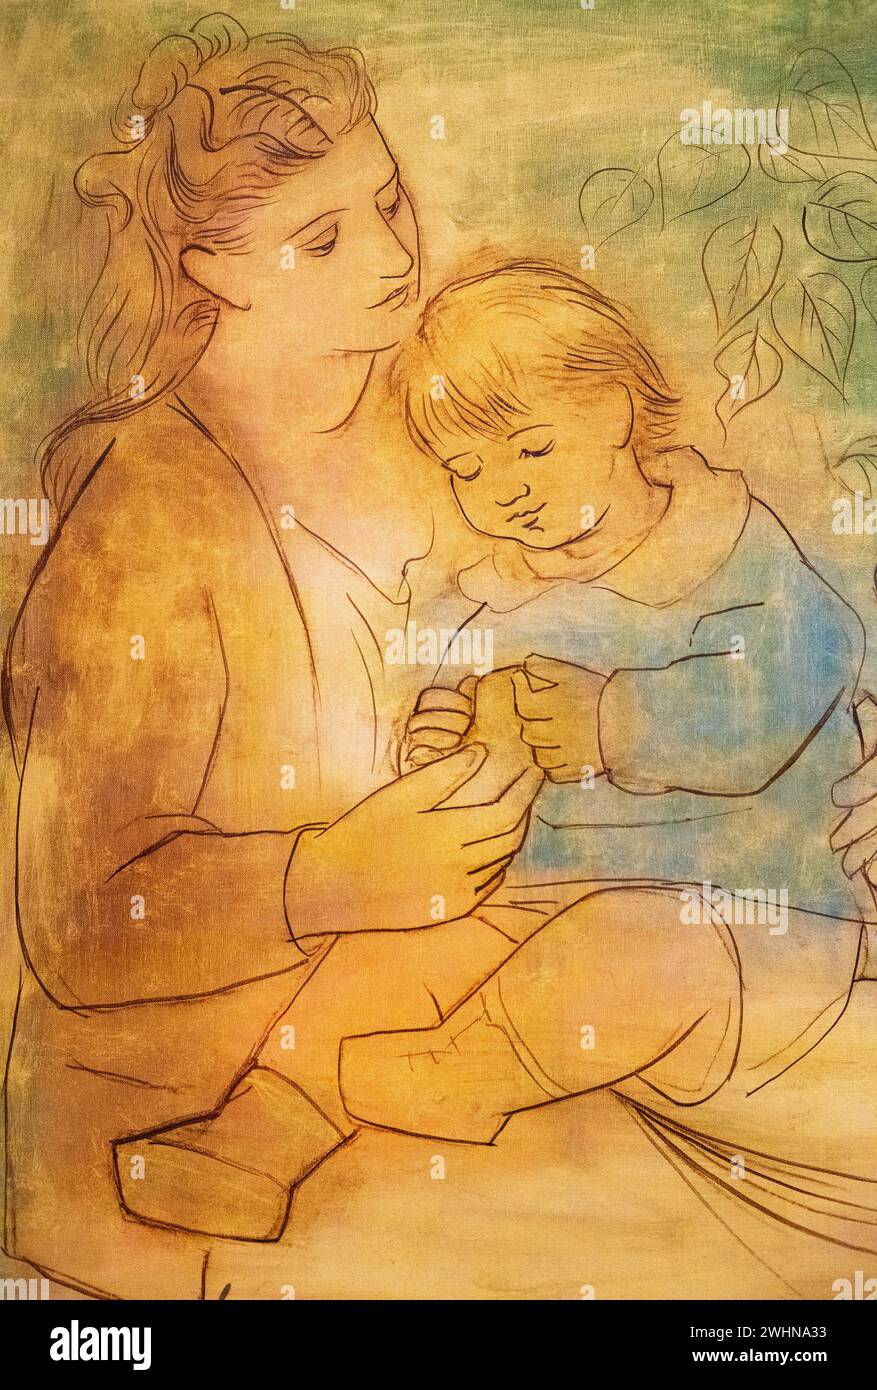 Pablow Picasso 1922 pittura a olio su tela "madre e bambino" al Museo d'Arte di Baltimora Foto Stock